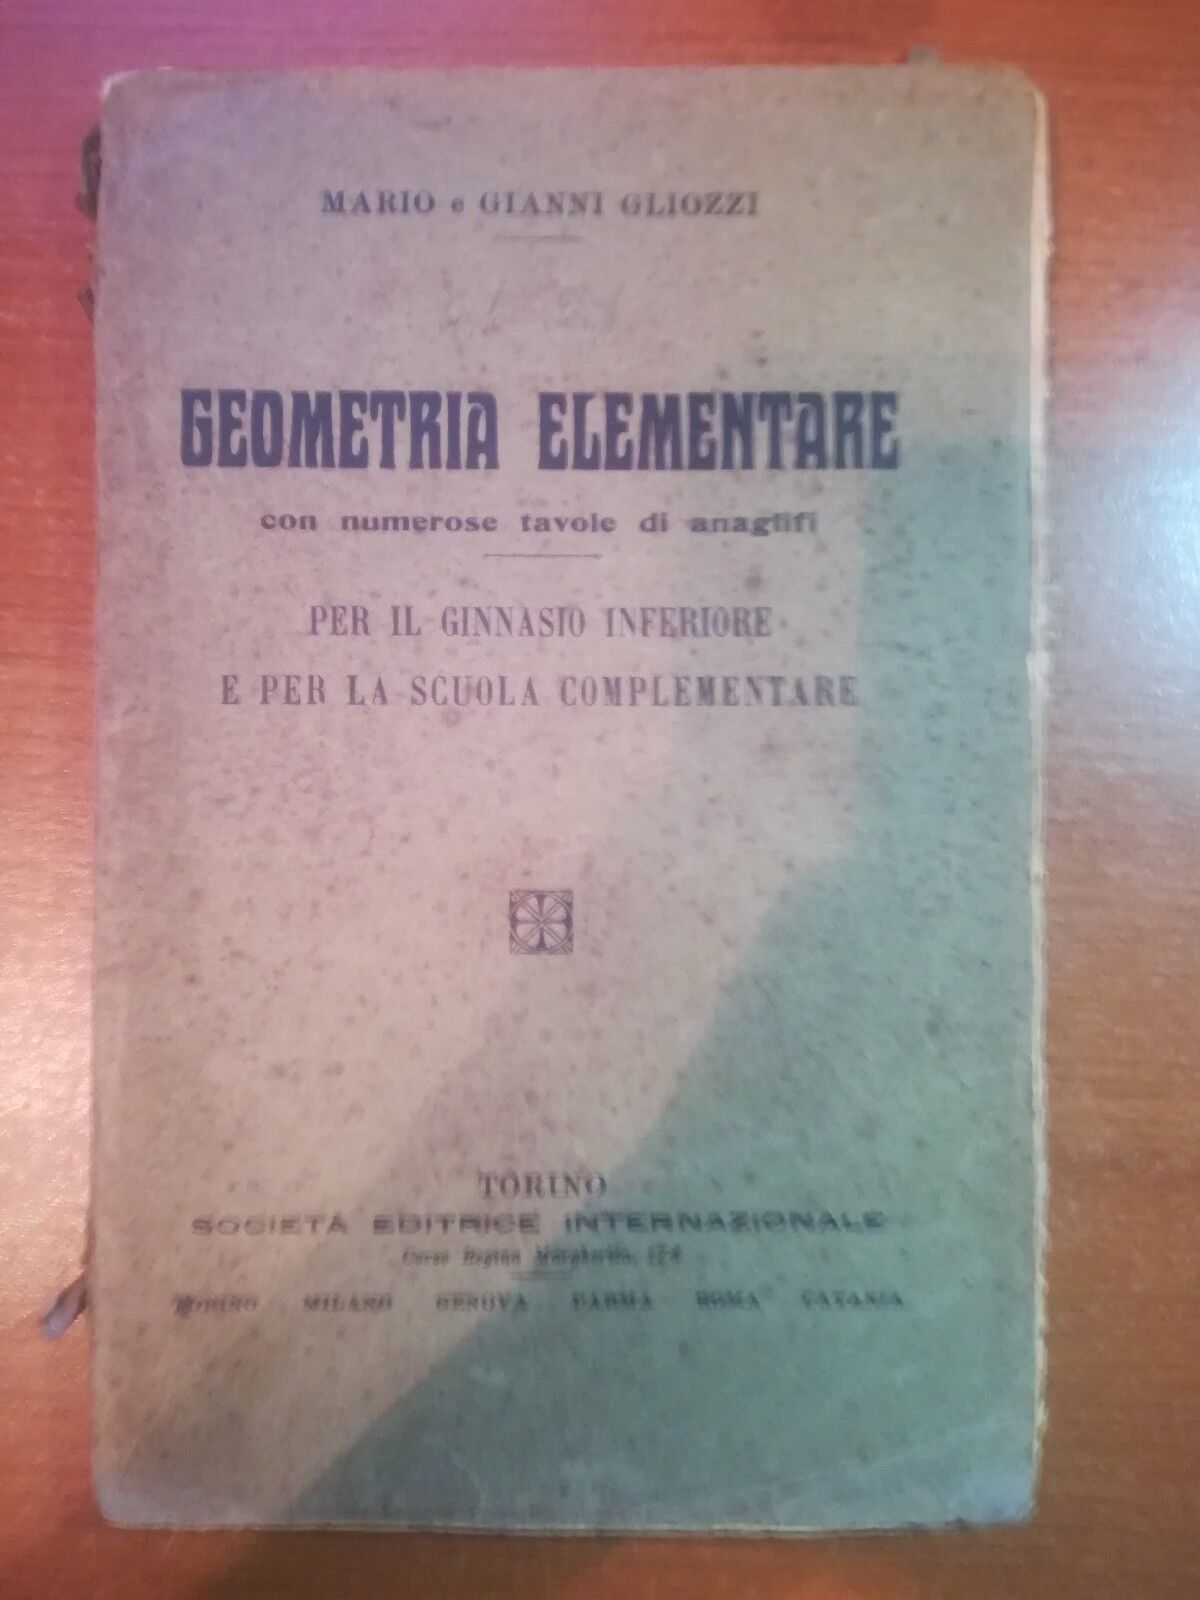 Geometria elementare - Mario e Gianni Gliozzi - SEI - 1928 - M